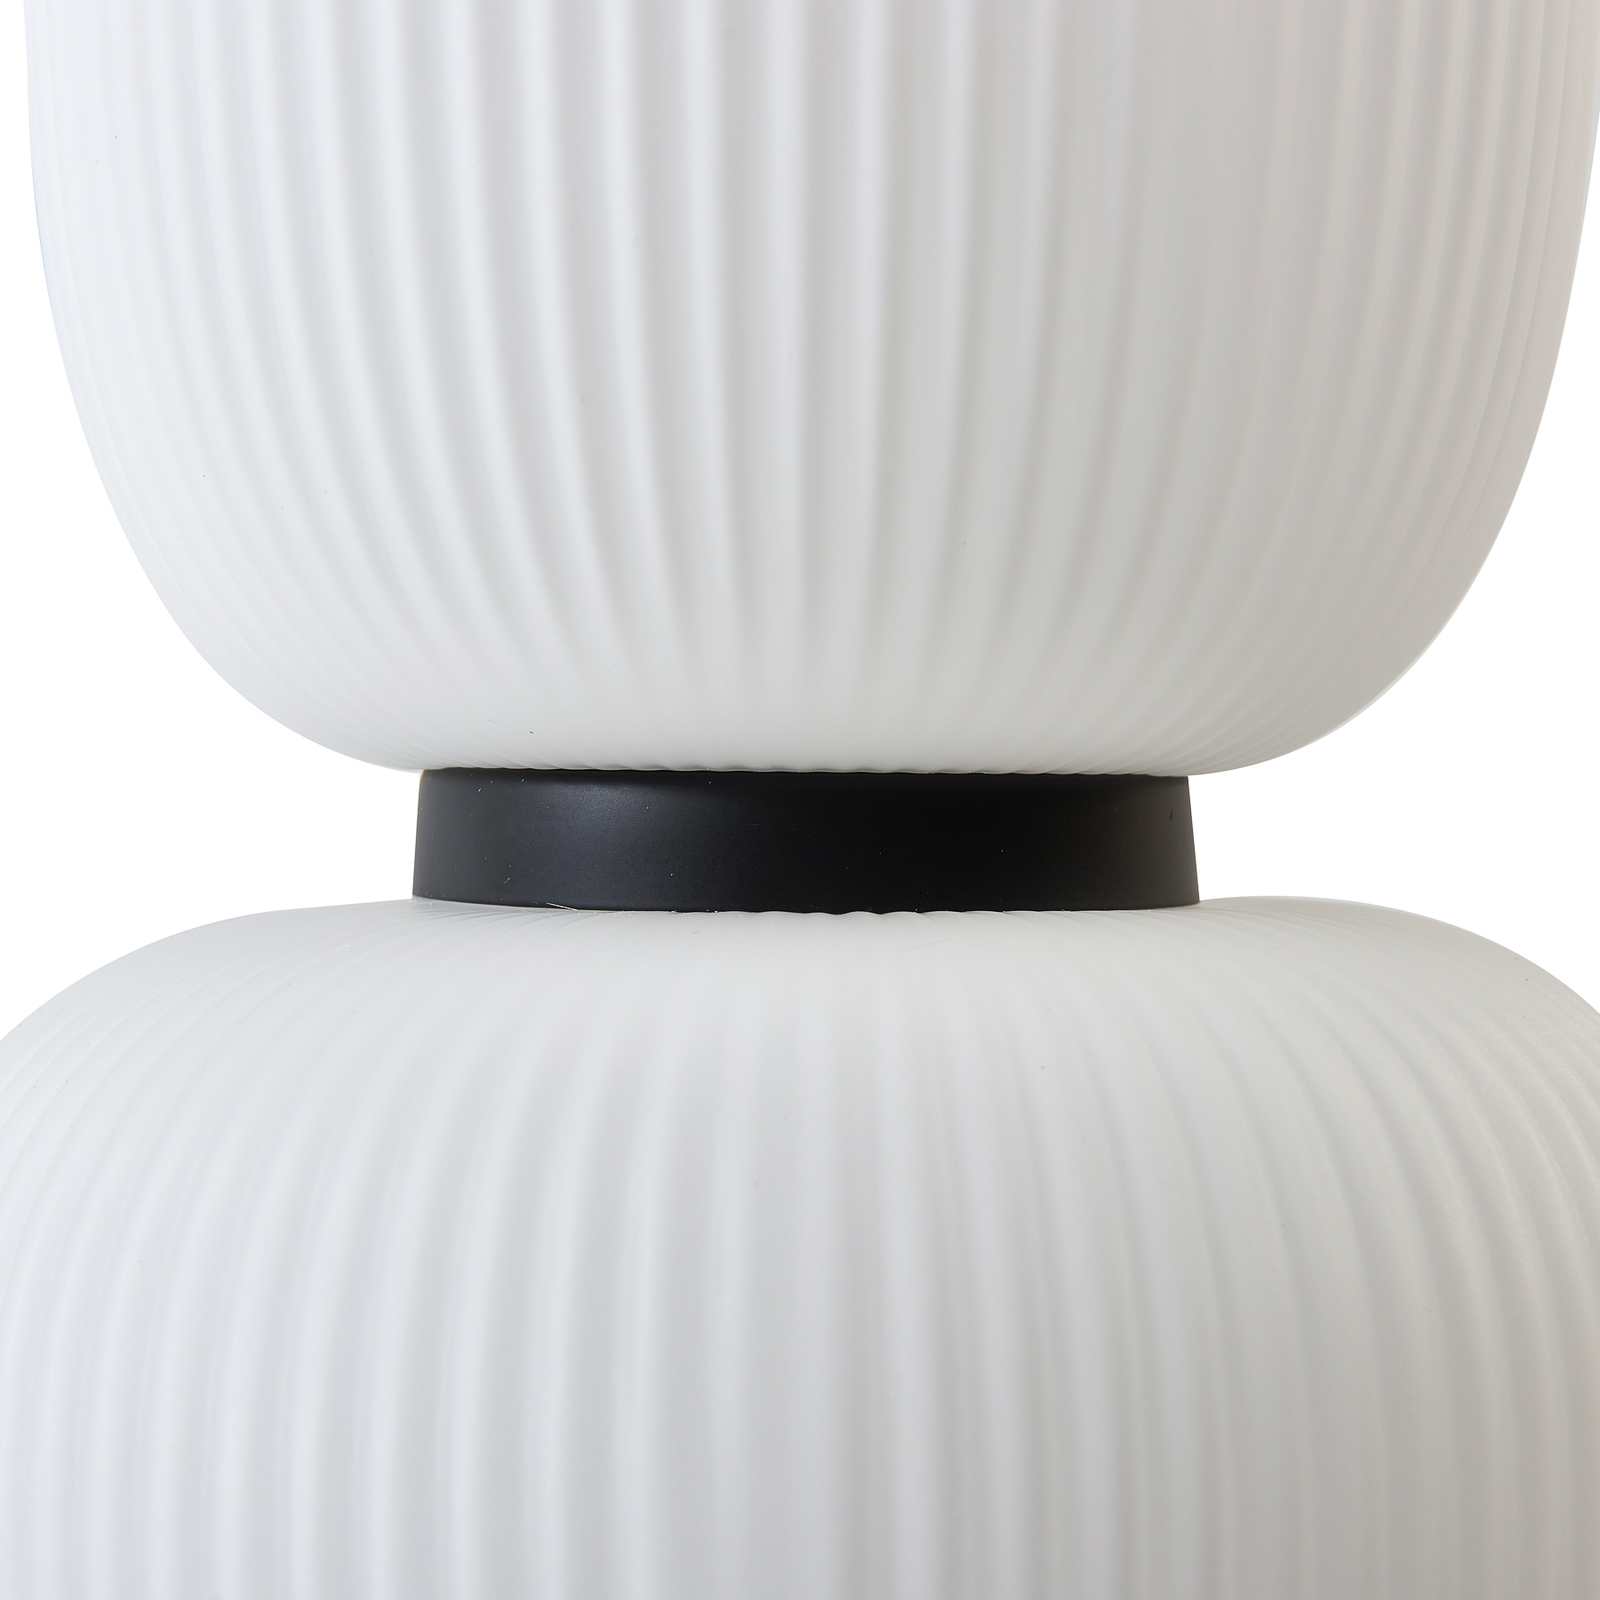 Lucande LED viseća svjetiljka Lucya, 2 žarulje, staklo, bijela, 43 cm